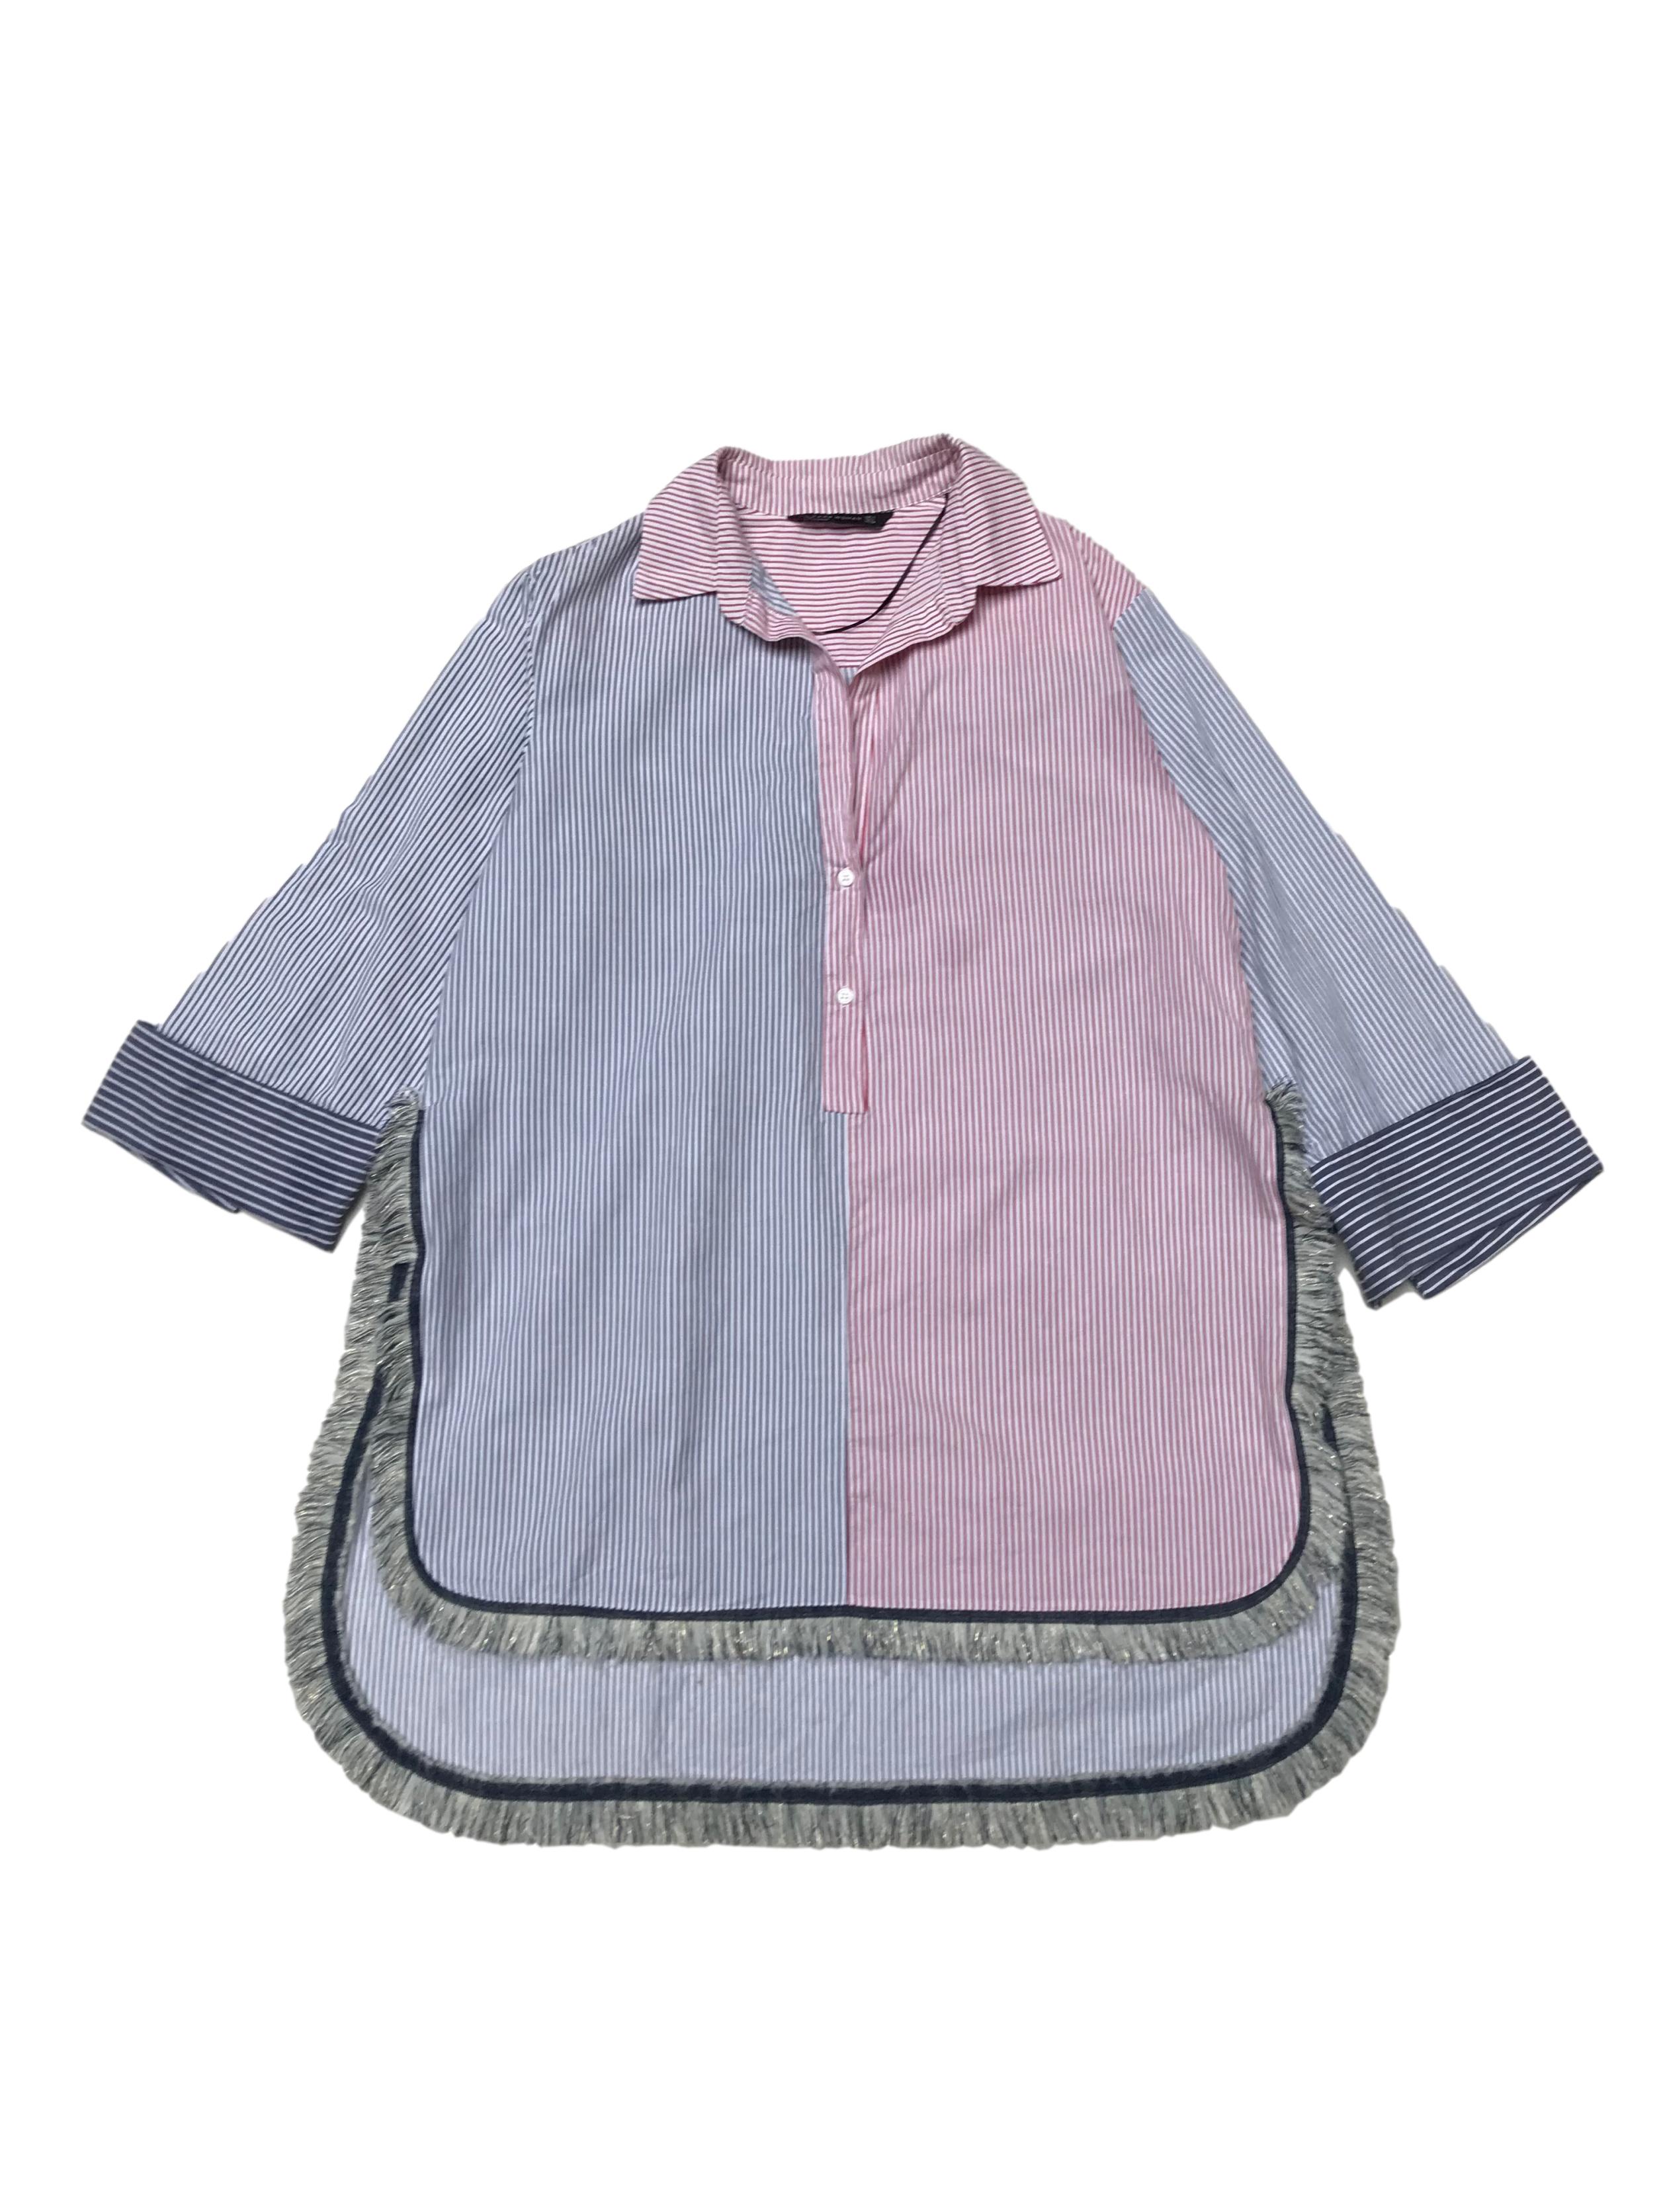 Blusa Zara oversize con mangas remangadas, 80% algodón 20% lino blanco con líneas rojas y azules, aberturas laterales y flecos. Largo 75 - 90cm. Precio original S/ 170